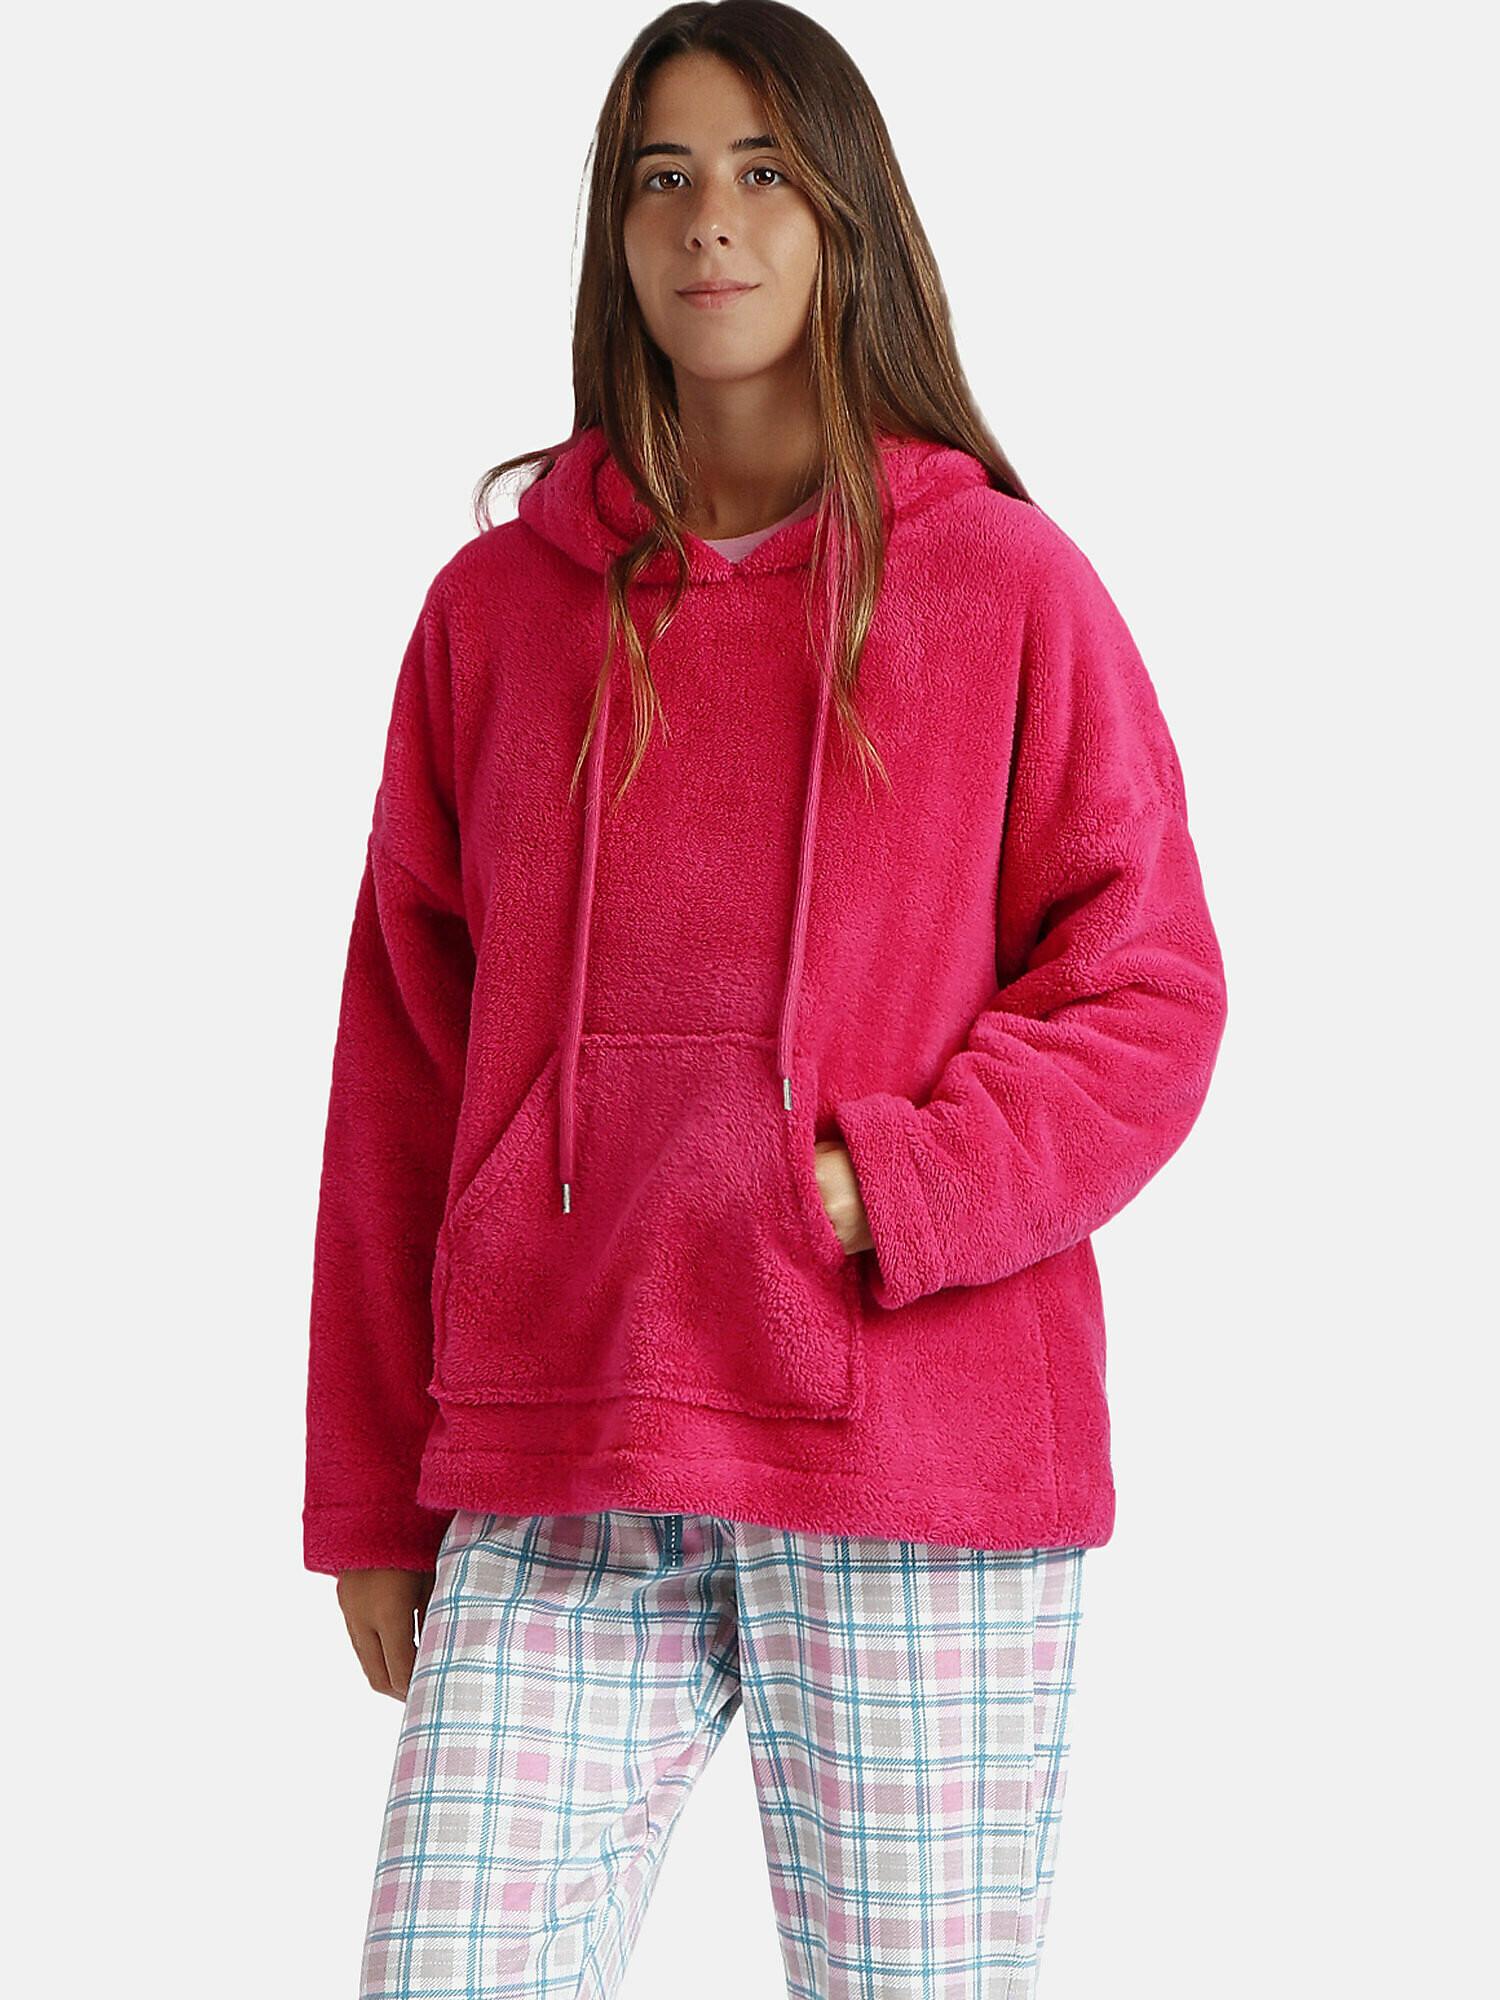 Kapuzen-sweatshirt Basica Damen Rot Bunt XL von Admas